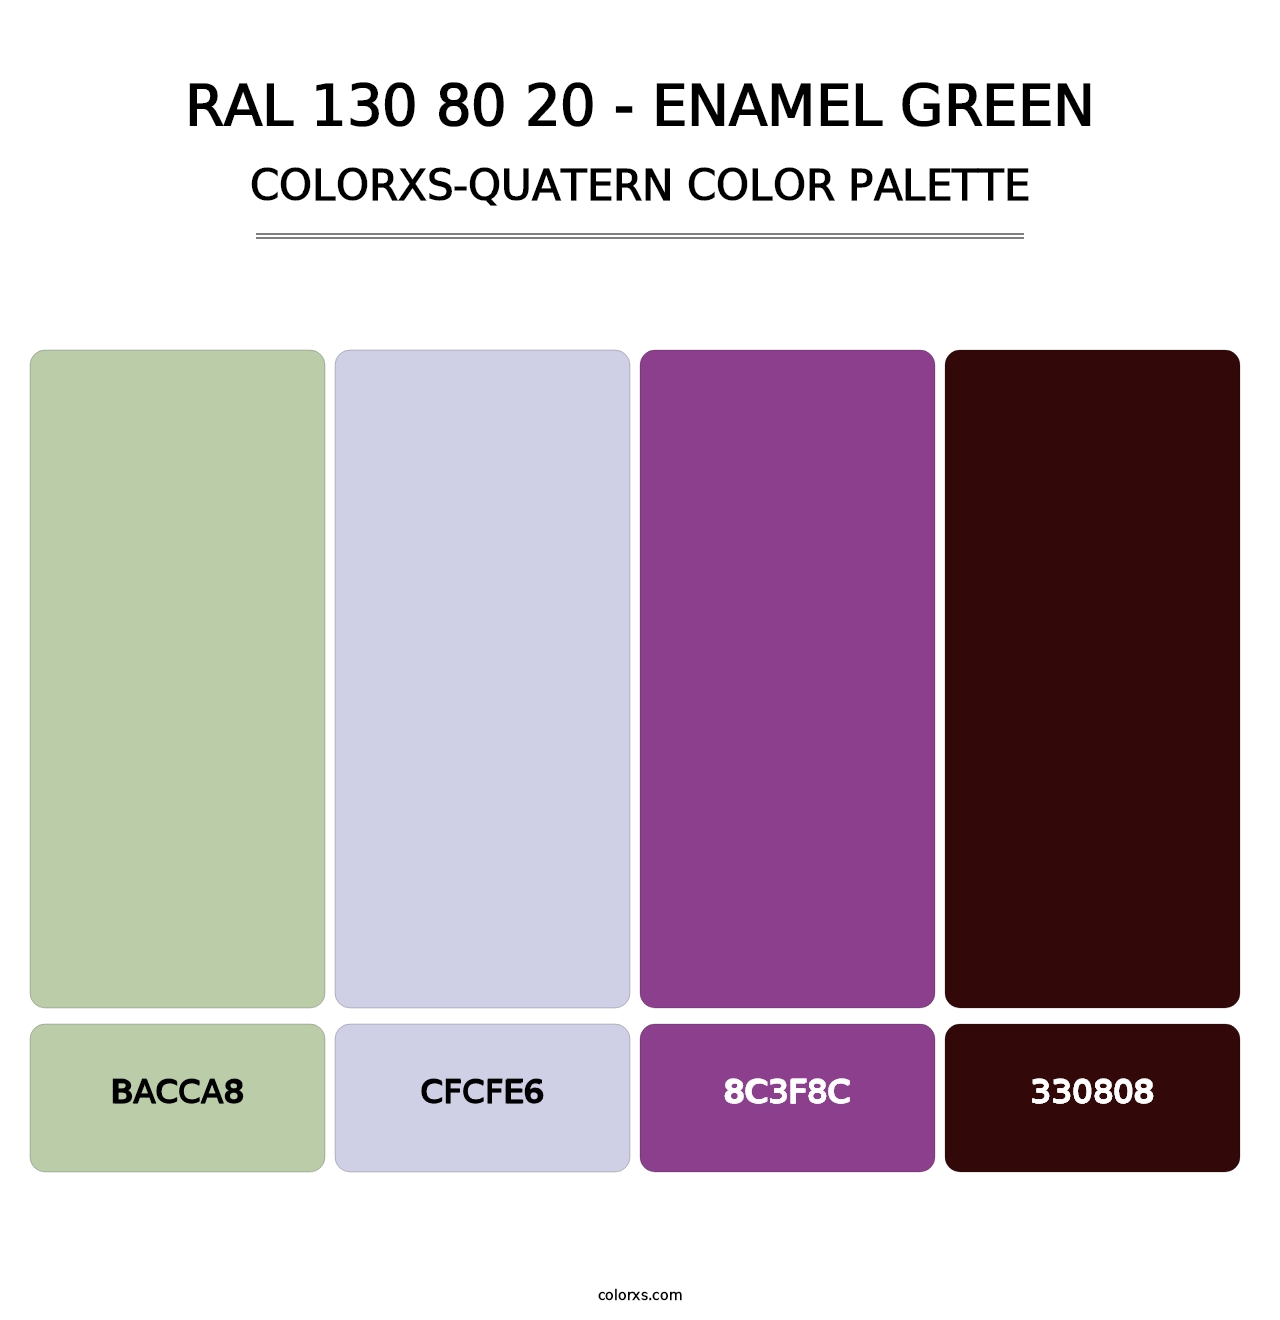 RAL 130 80 20 - Enamel Green - Colorxs Quatern Palette